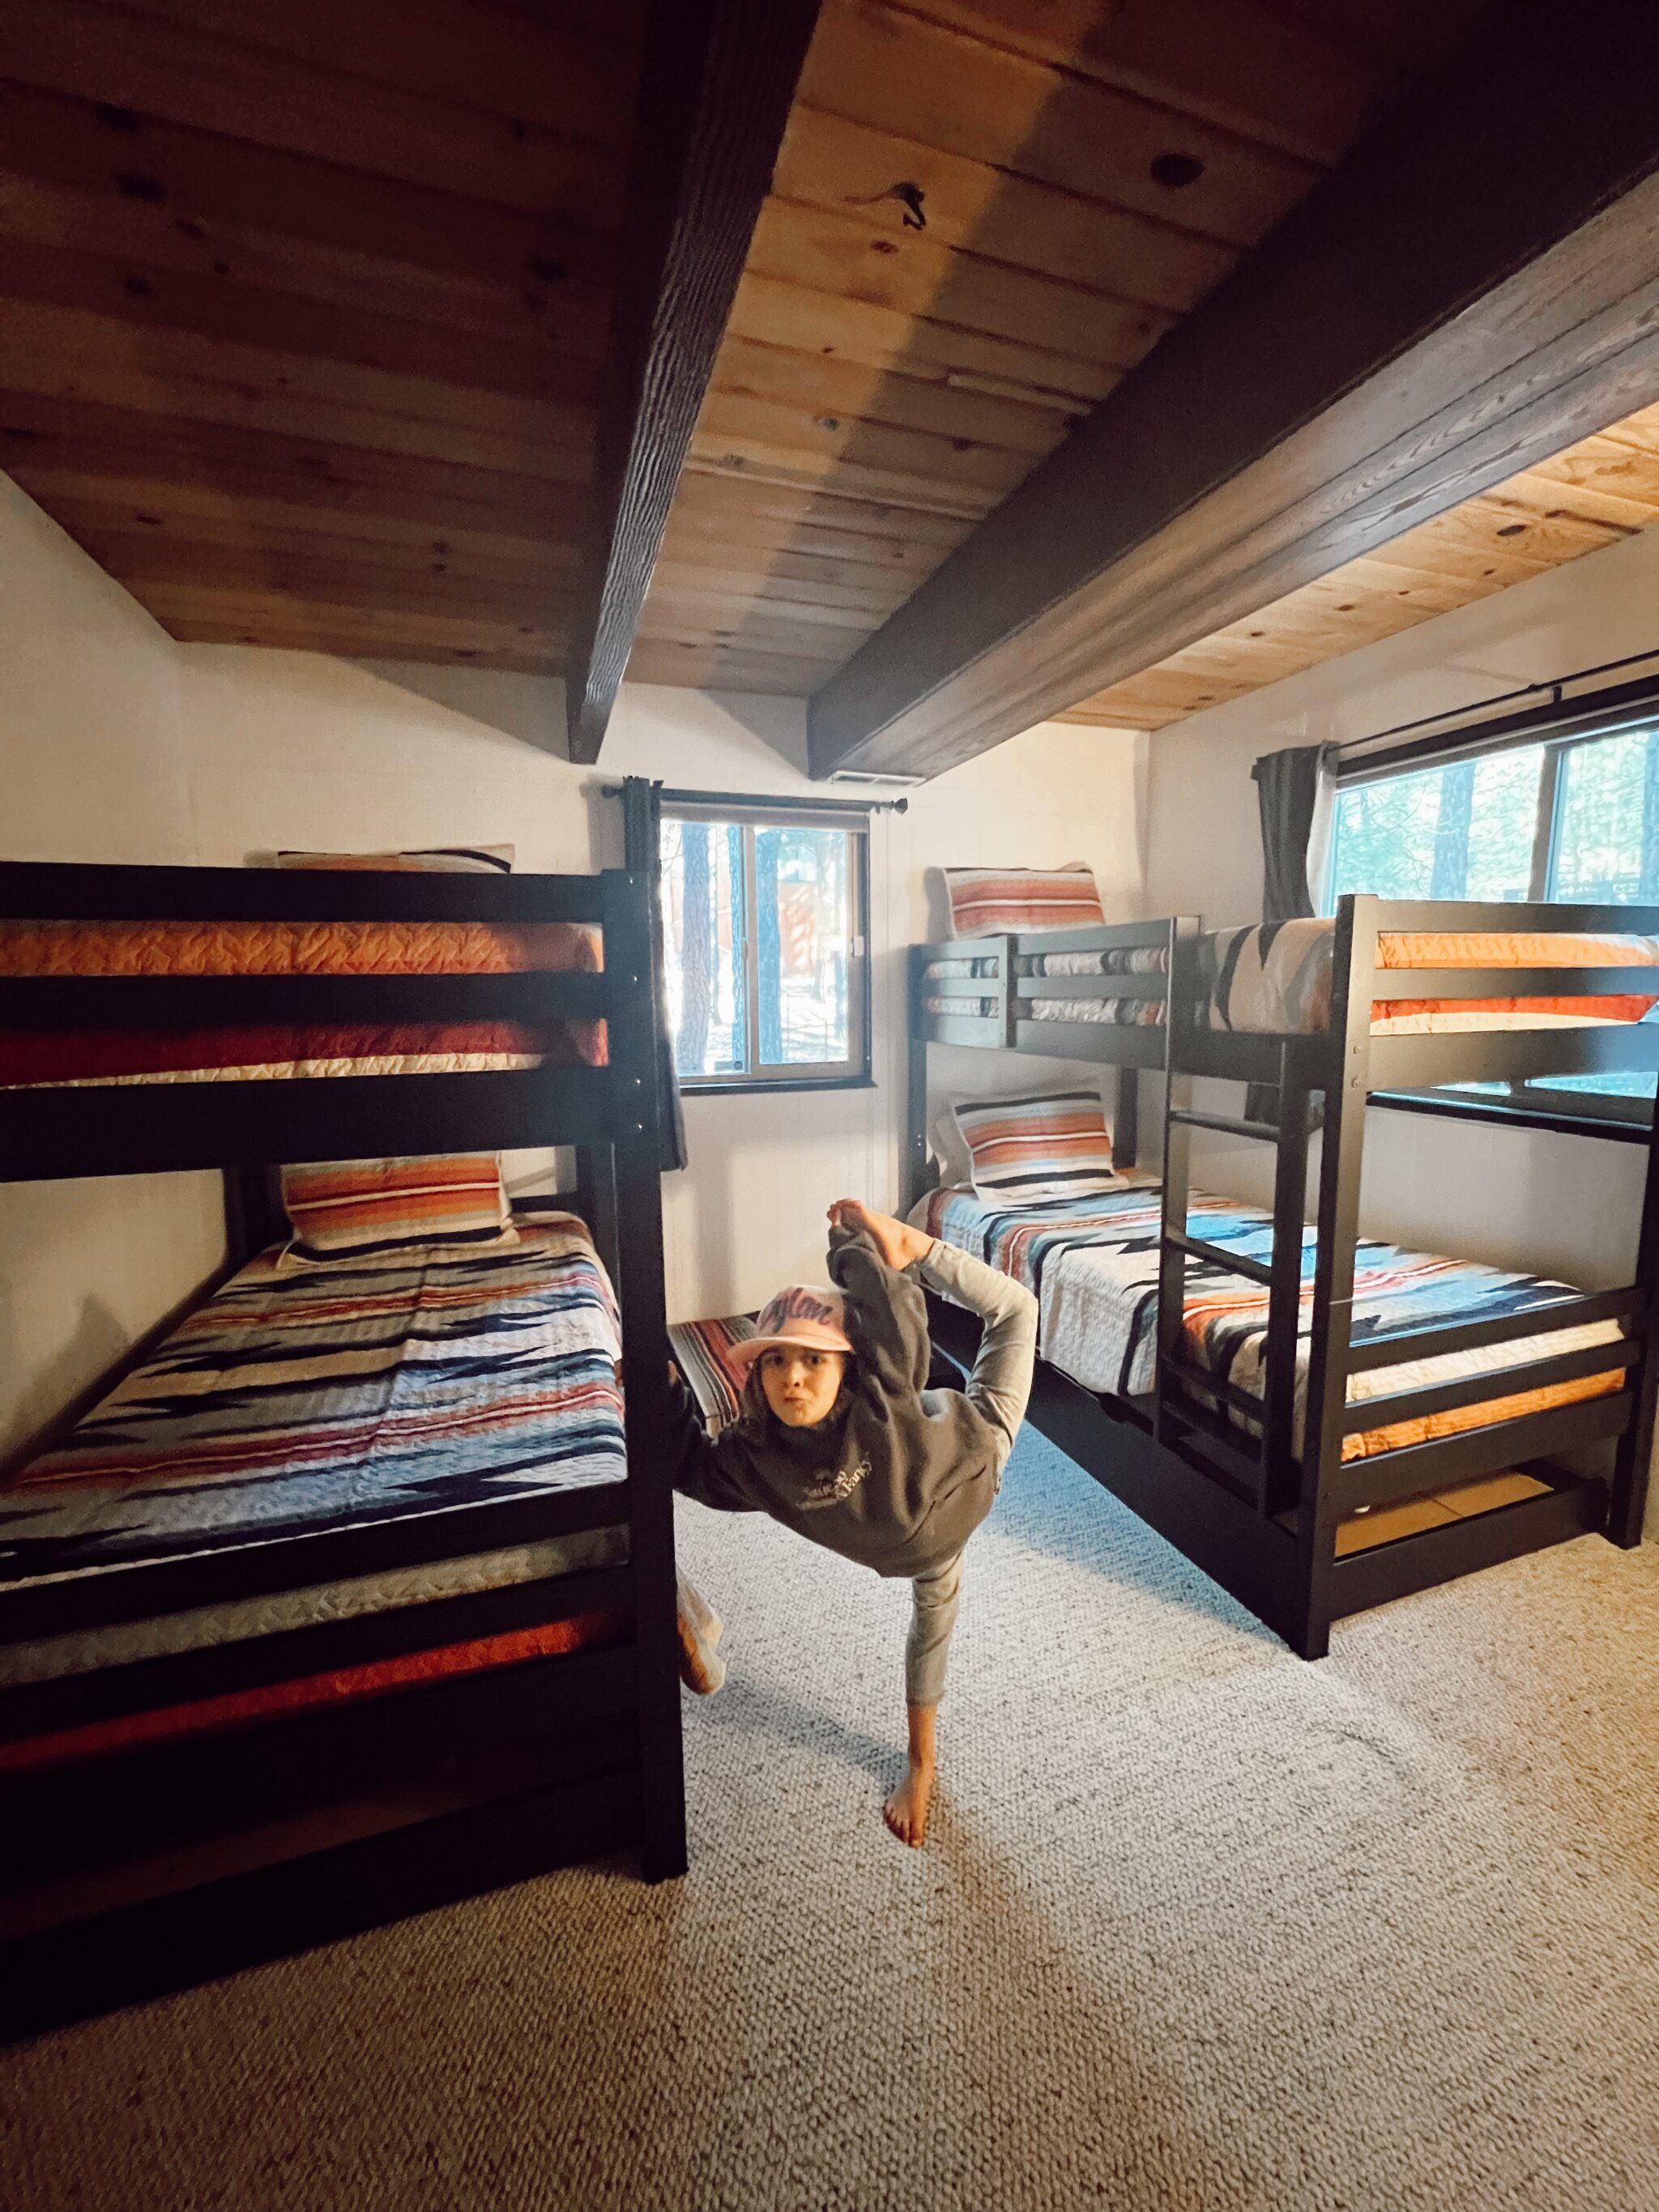 kid dancing by bunk beds